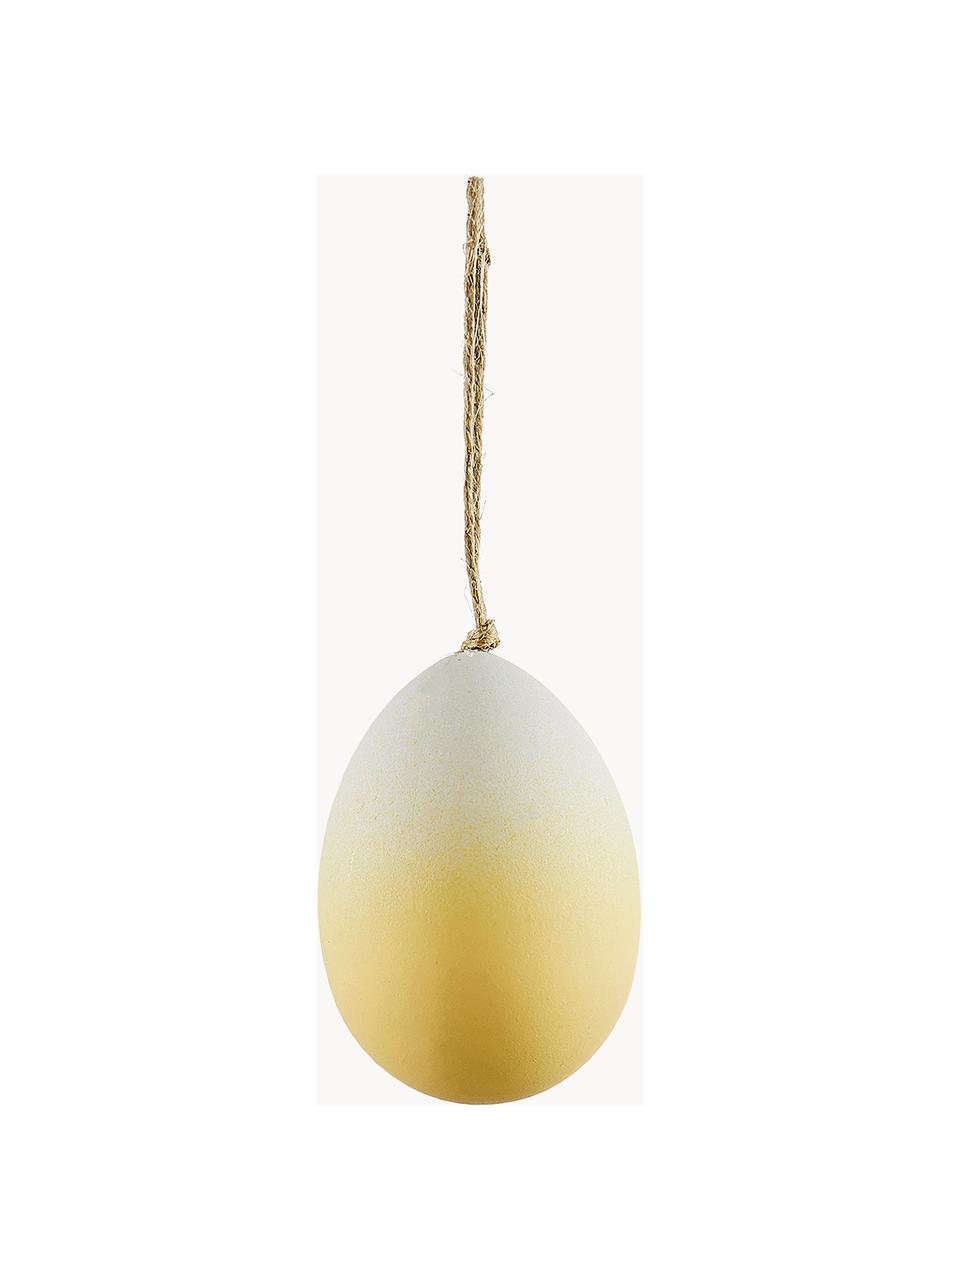 Ručně vyrobené velikonoční dekorace Essie, 3 ks, Umělá hmota, Bílá, žlutá, Ø 4 cm, V 6 cm